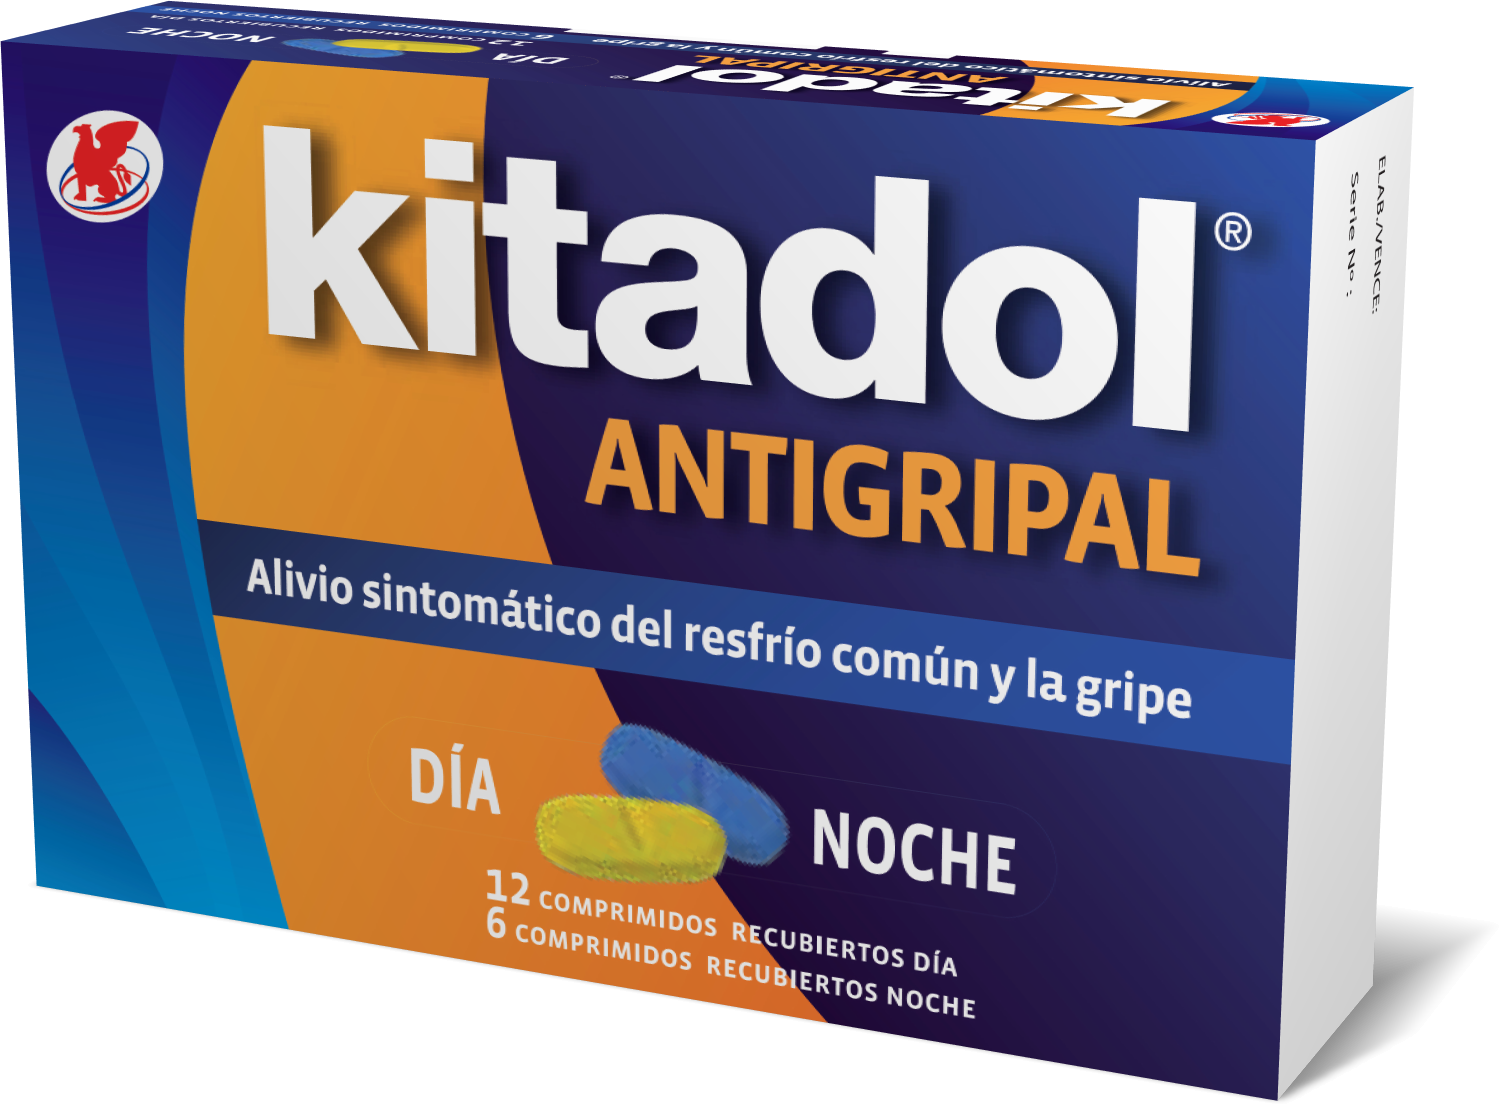 Caja de Kitadol® Antigripal